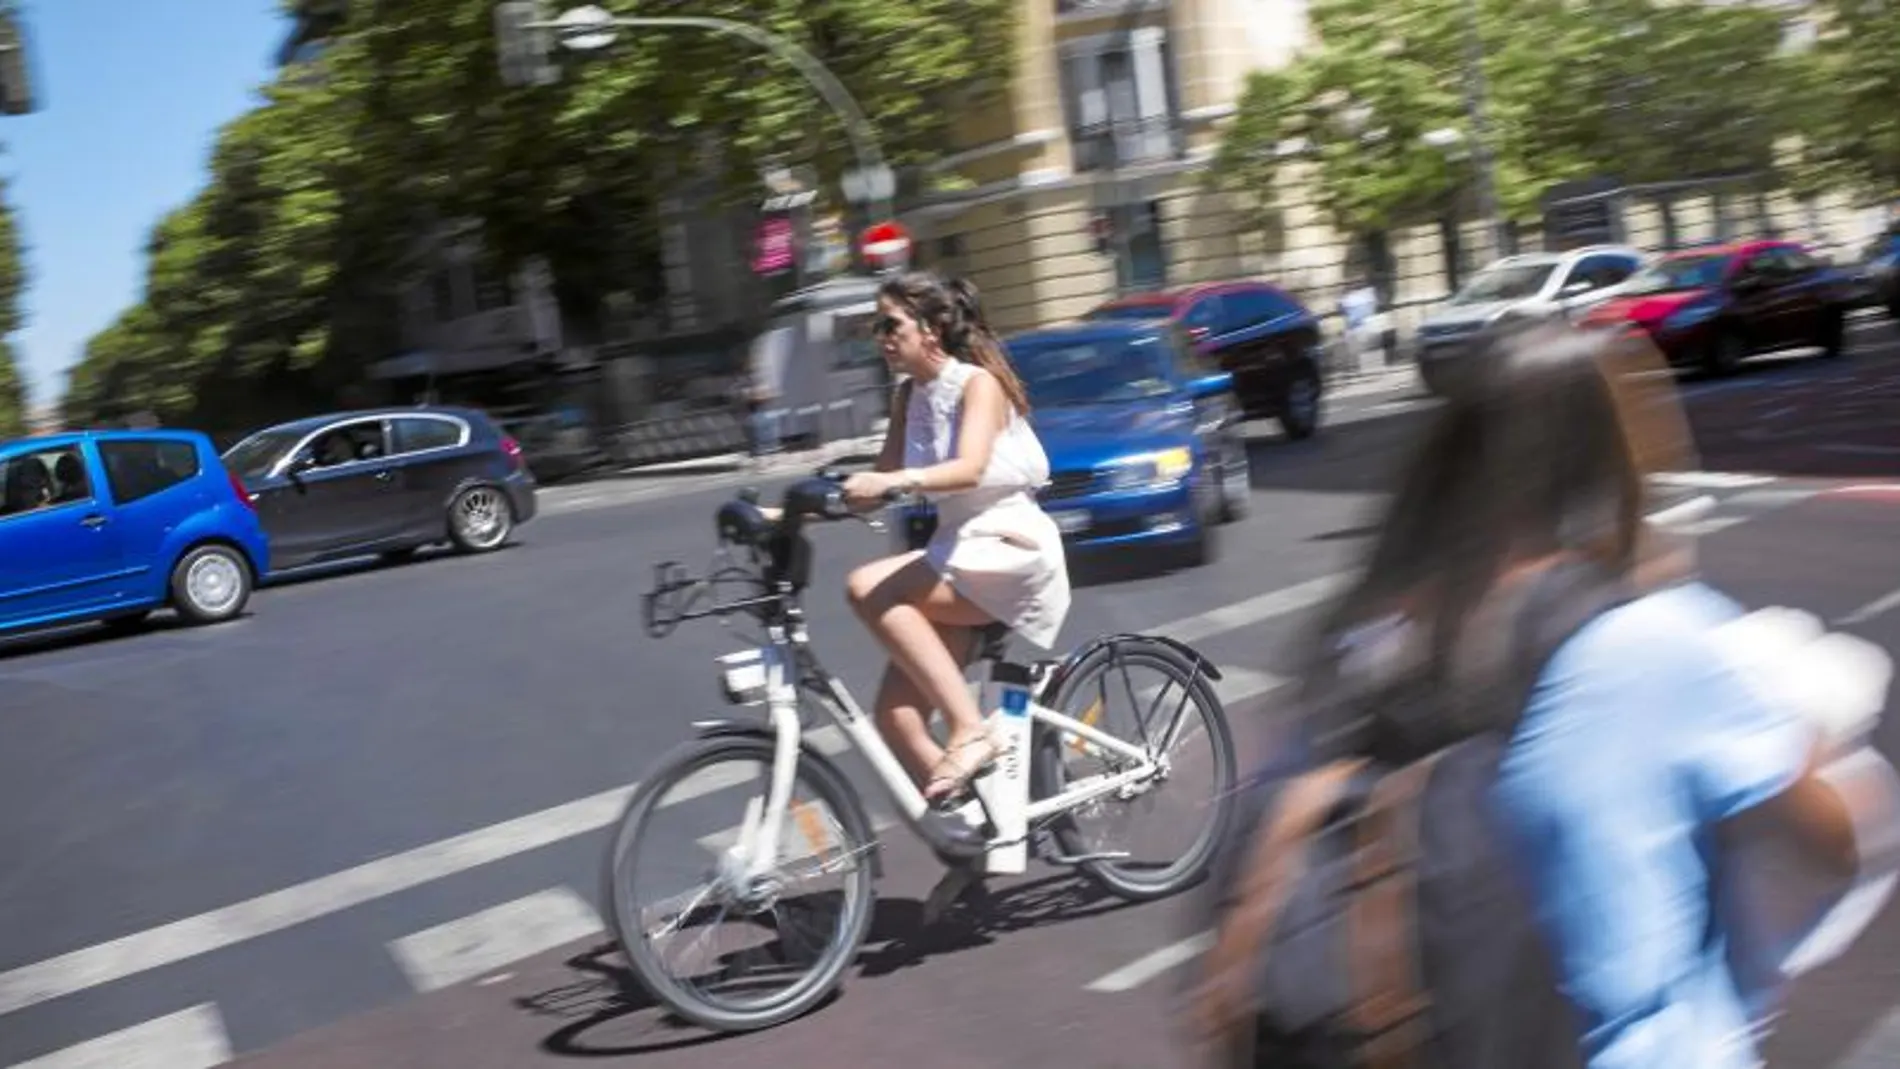 Las quejas sobre el mal funcionamiento de BiciMad (estaciones averiadas o sin bicis) han descendido los últimos meses de forma considerable